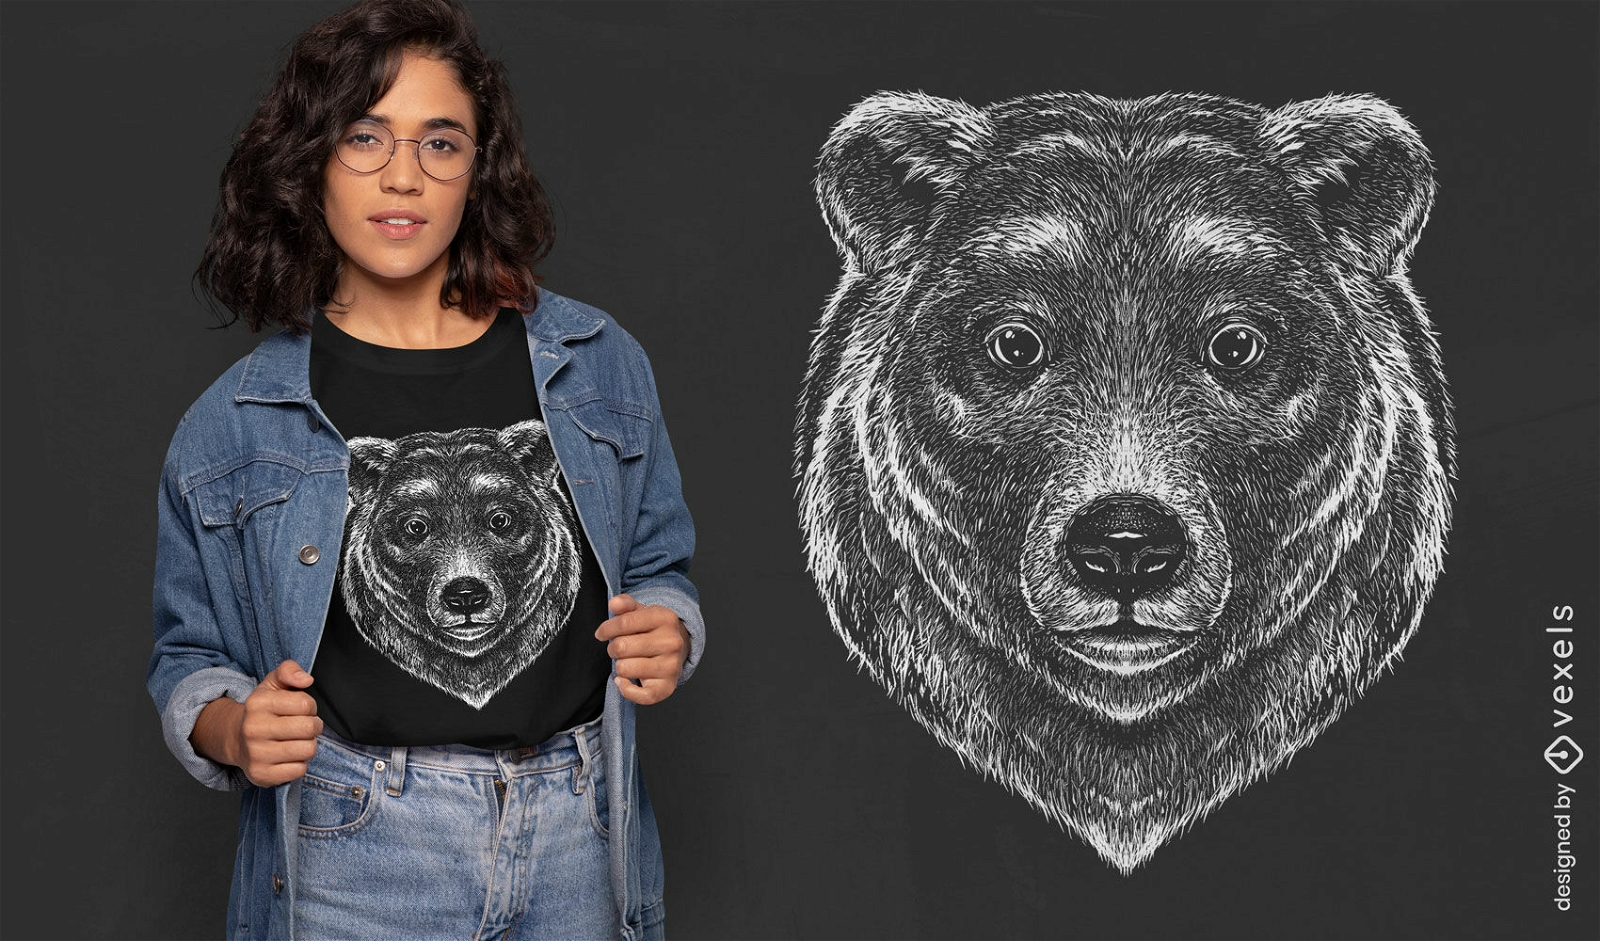 Dise?o detallado de camiseta con cara de oso grizzly